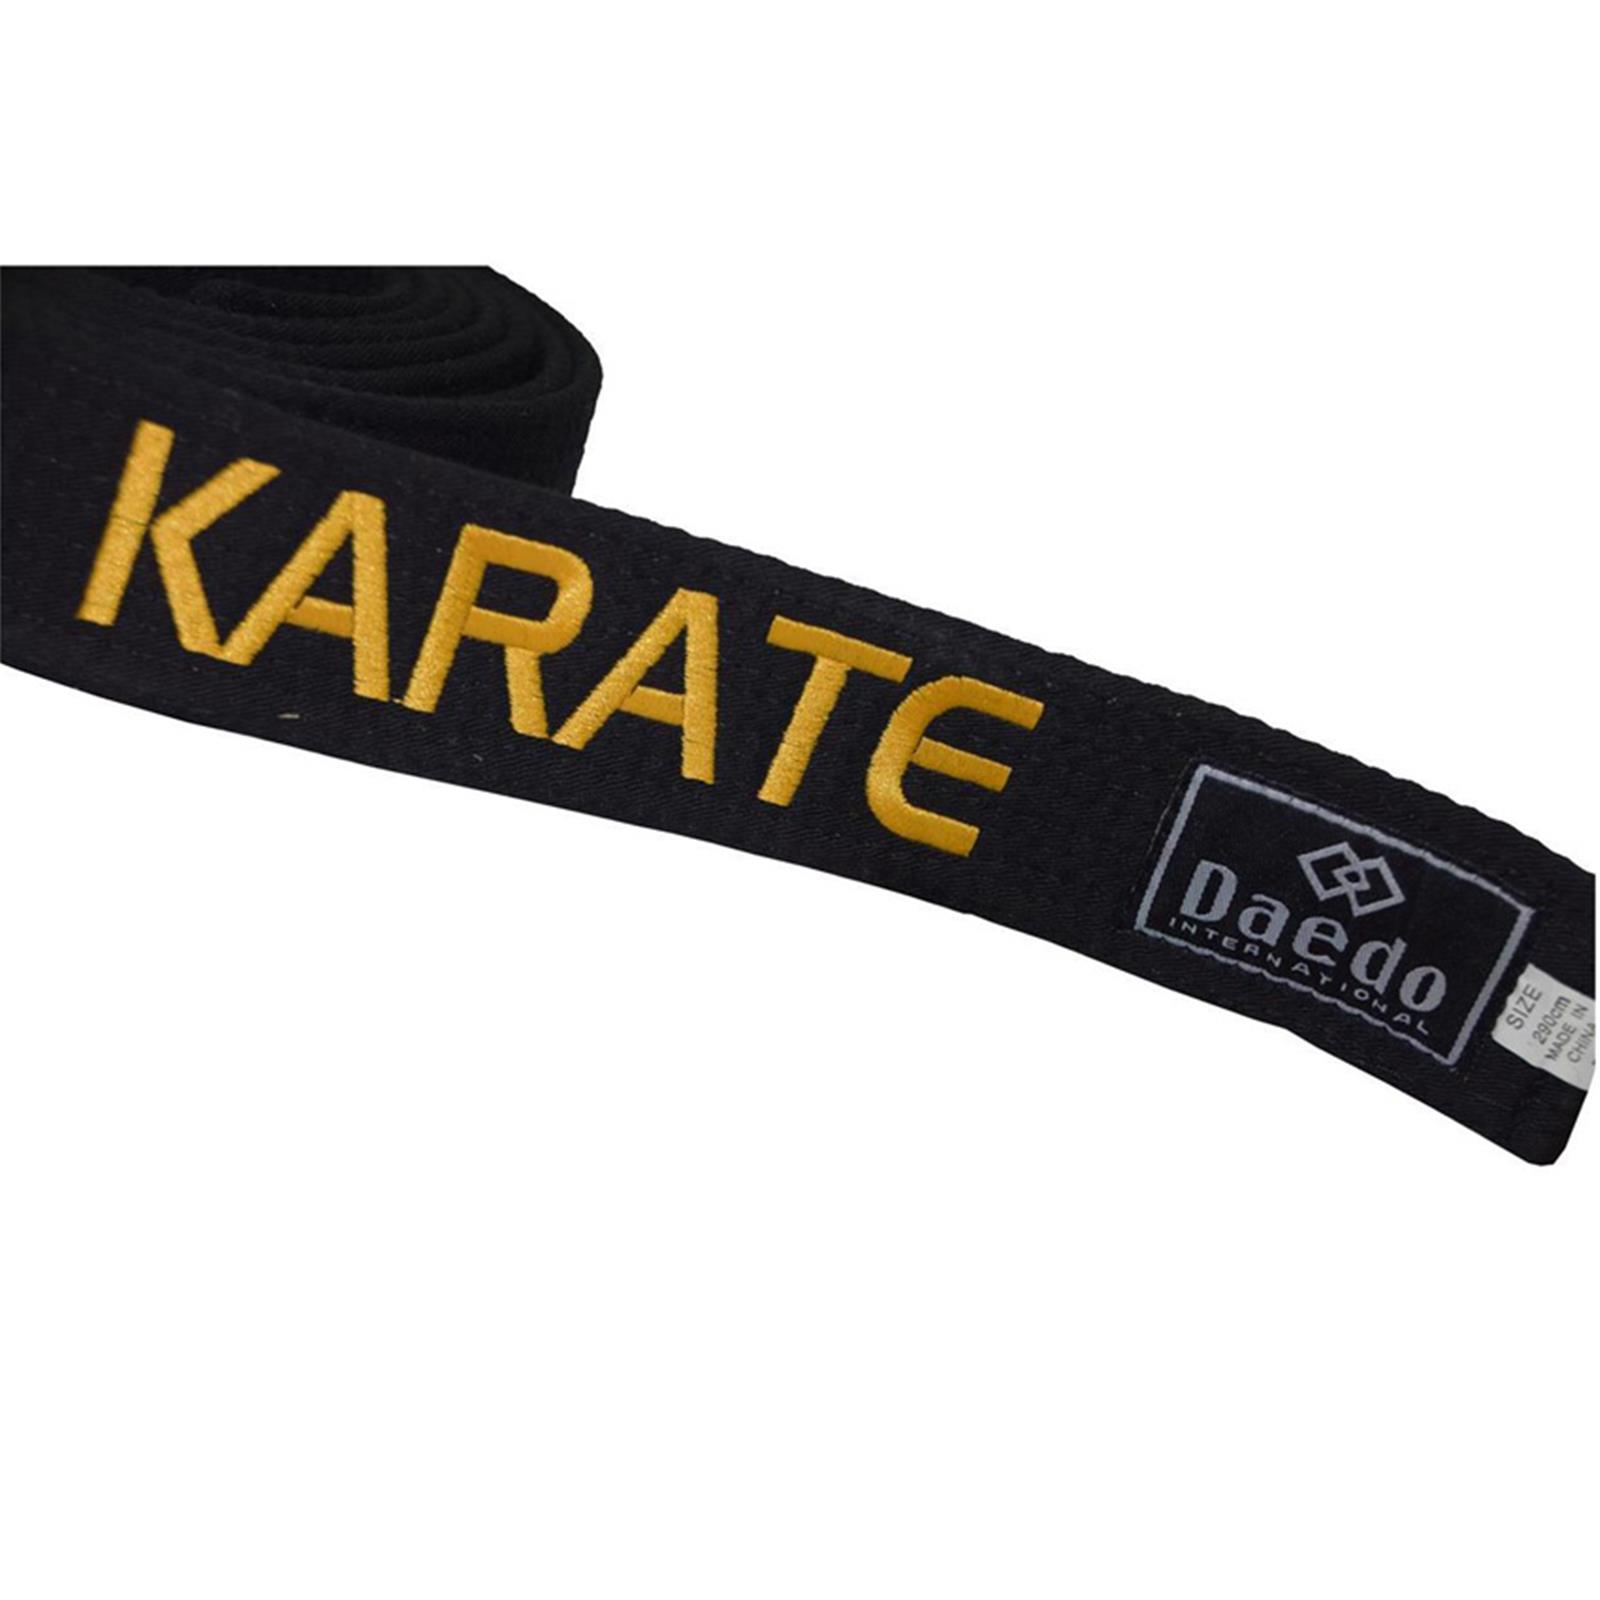 Dae Do Cintura Nera Karate ricamata Oro personalizzata